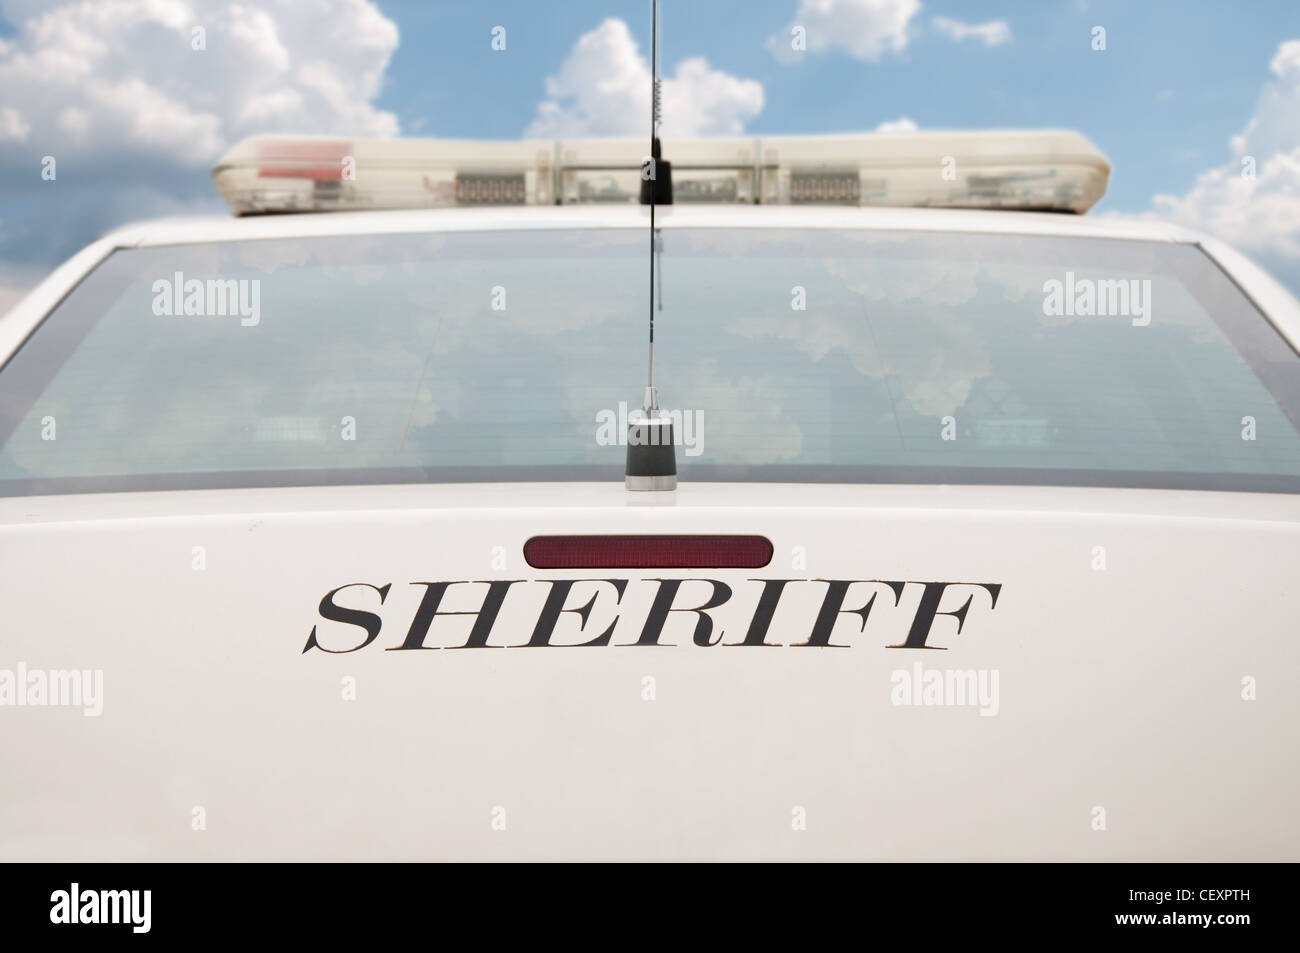 Estremità posteriore di uno sceriffo auto di pattuglia con sfondo con cielo nuvoloso Foto Stock